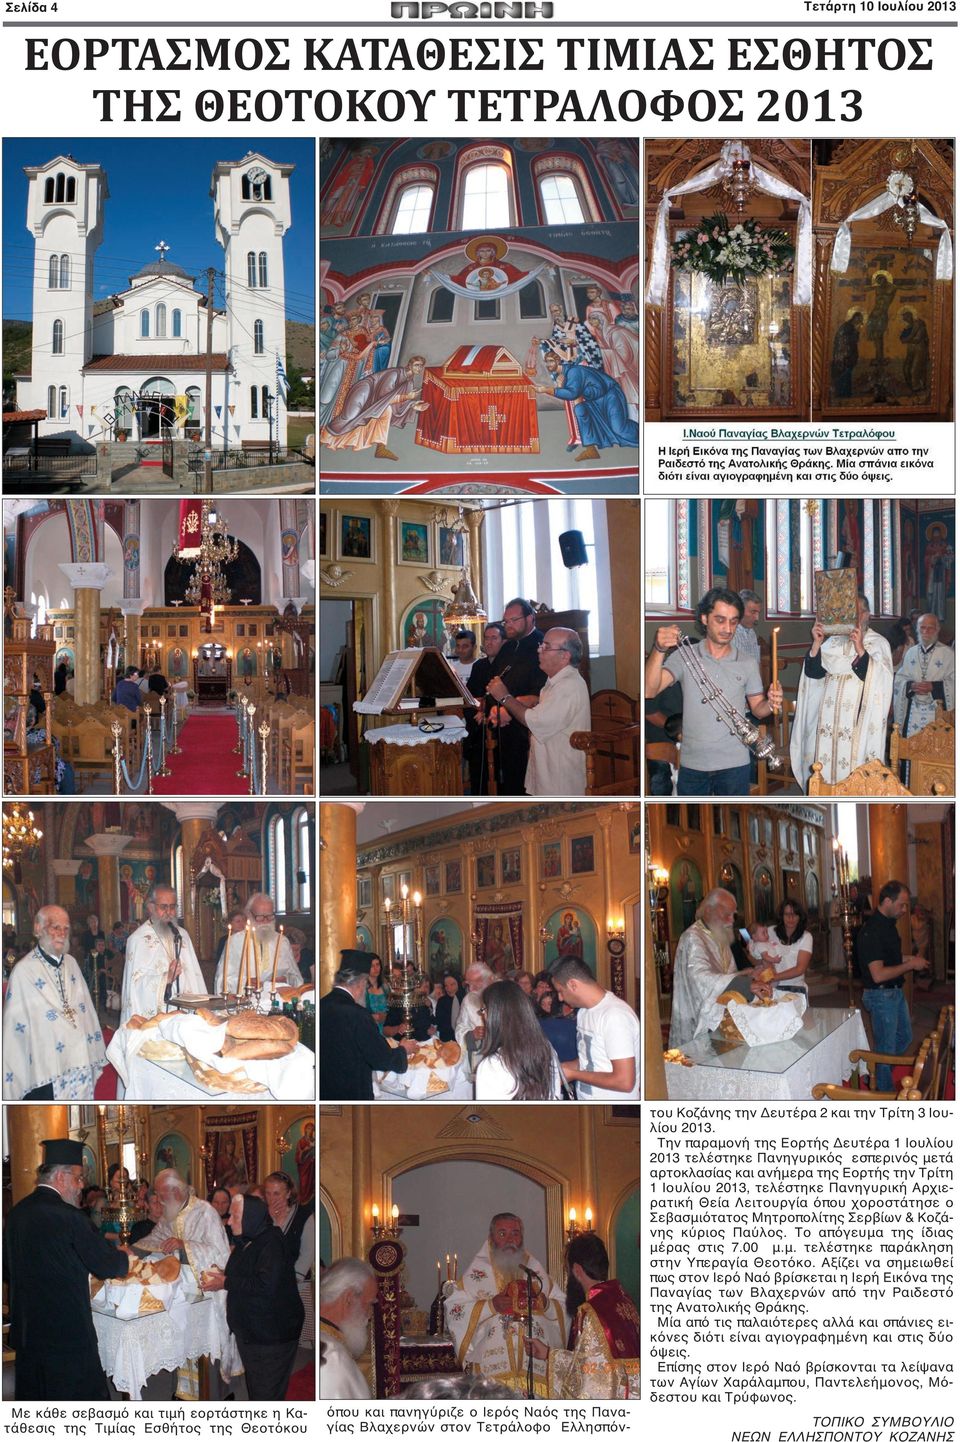 Την παραμονή της Εορτής Δευτέρα 1 Ιουλίου 2013 τελέστηκε Πανηγυρικός εσπερινός μετά αρτοκλασίας και ανήμερα της Εορτής την Τρίτη 1 Ιουλίου 2013, τελέστηκε Πανηγυρική Αρχιερατική Θεία Λειτουργία όπου